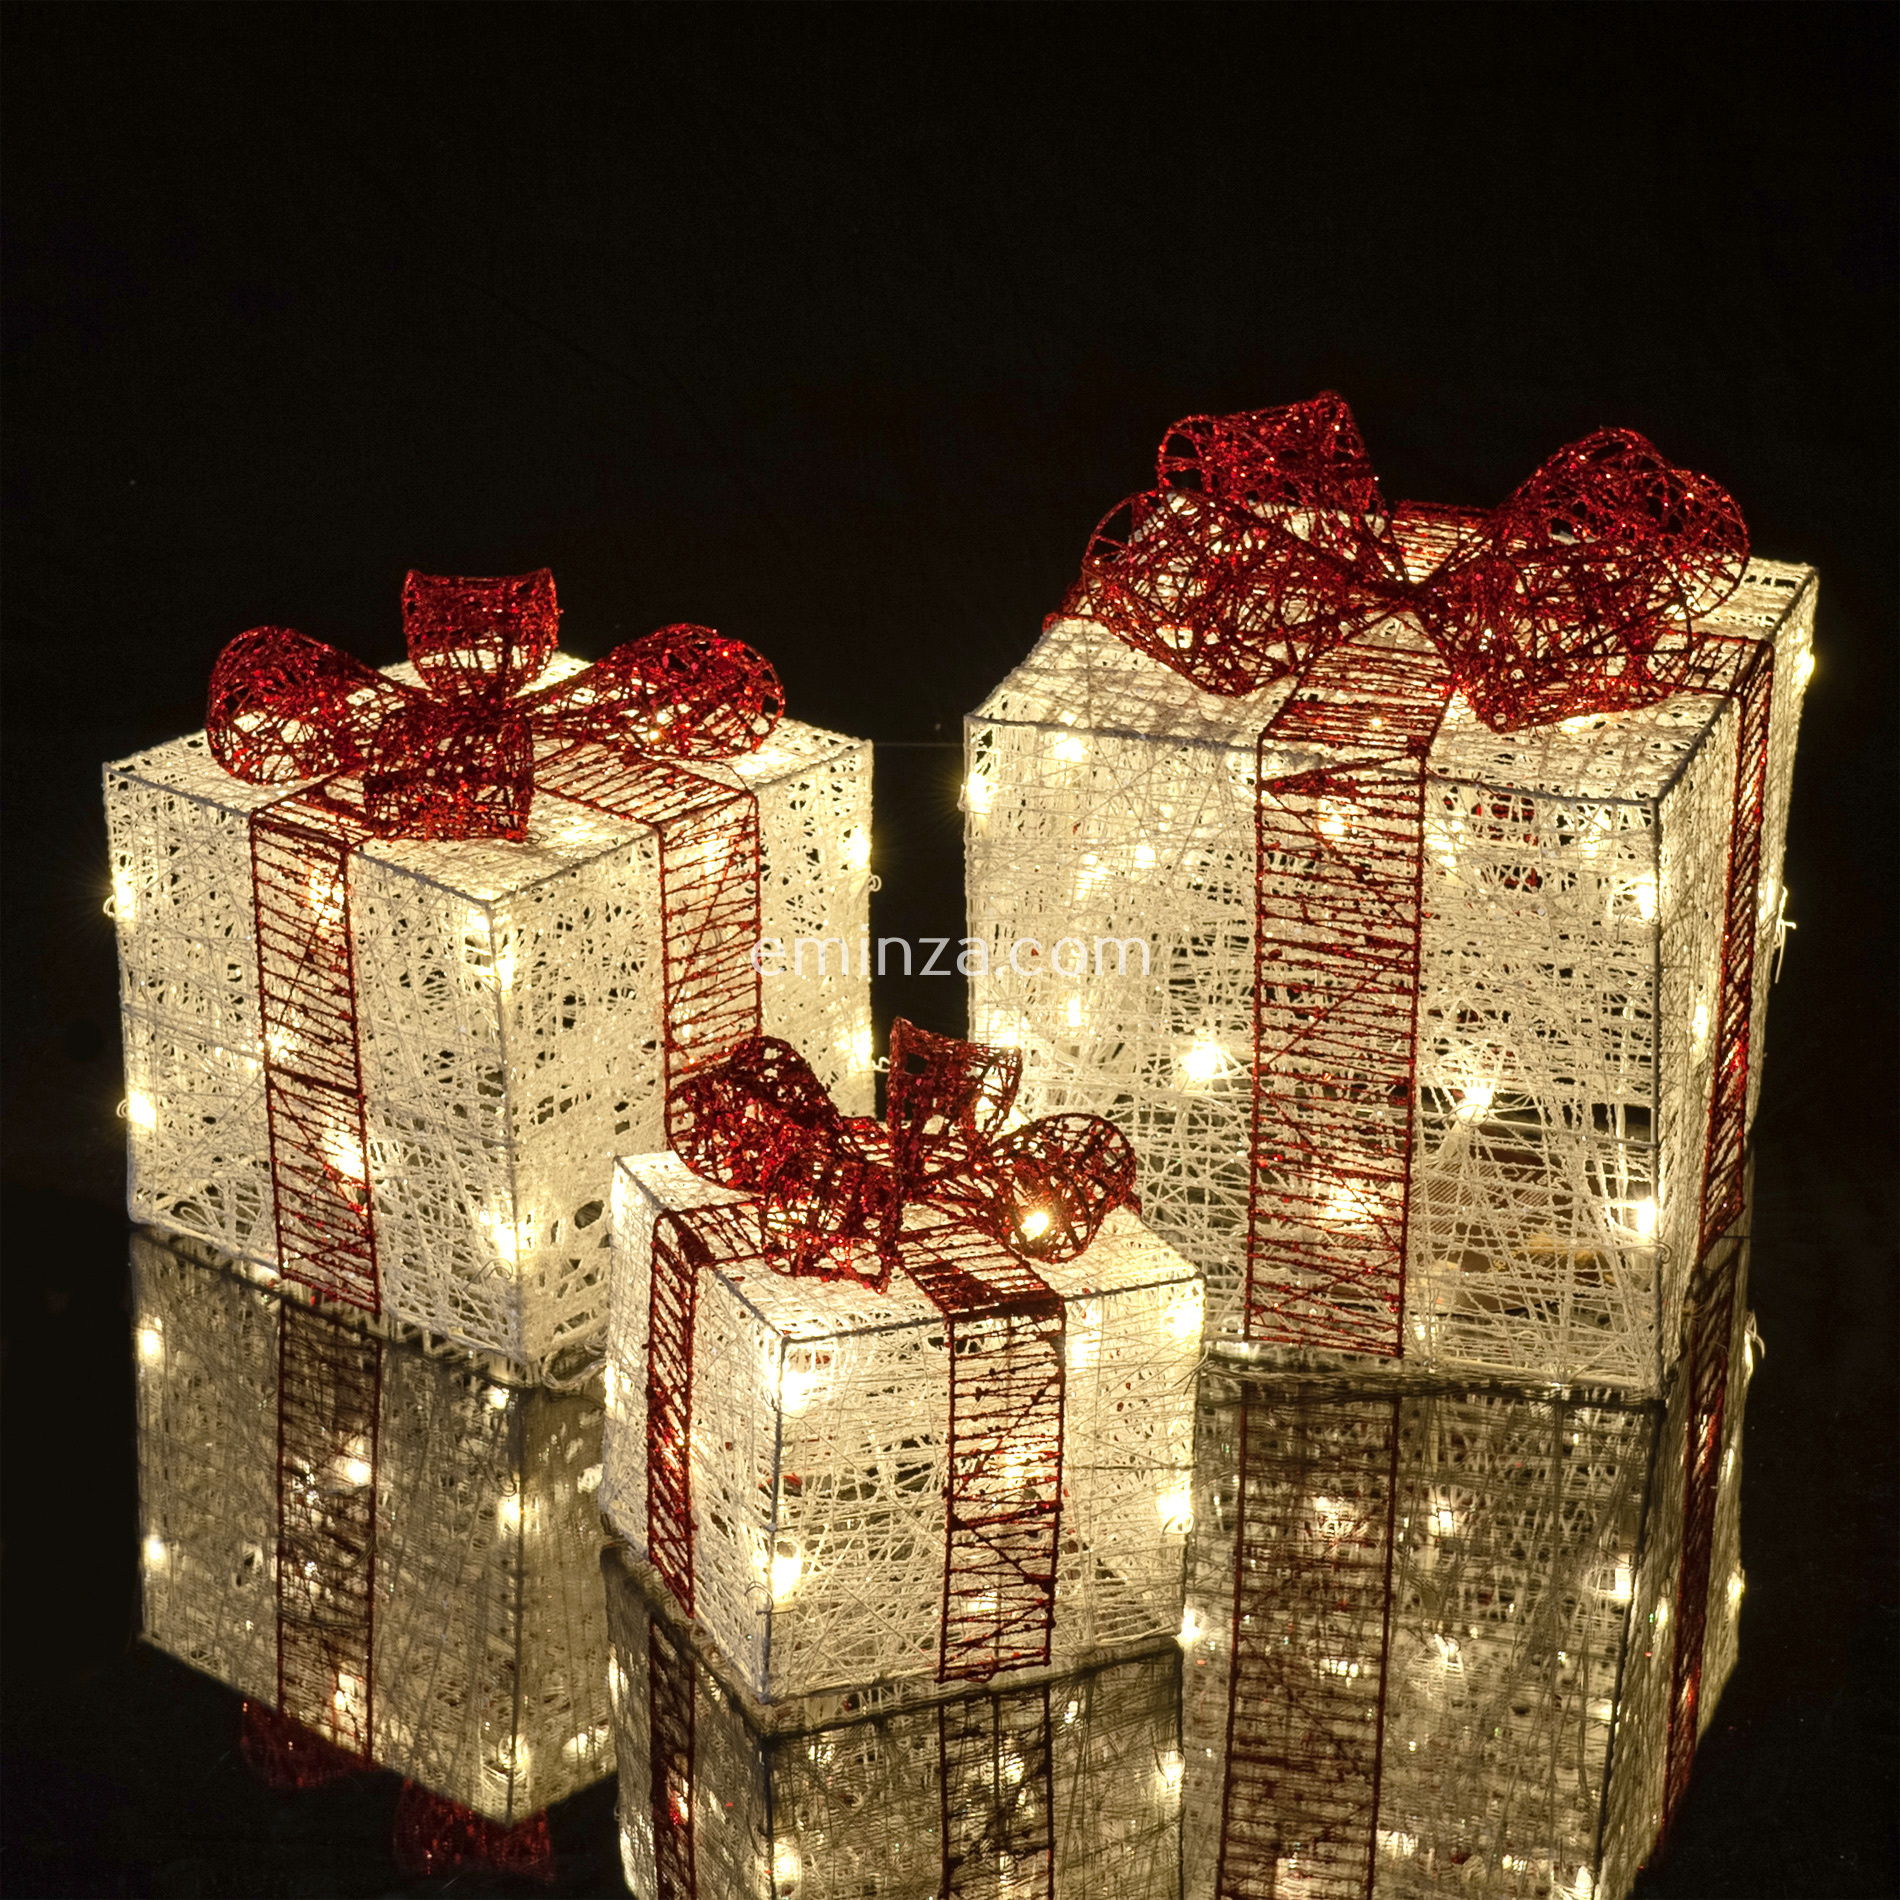 lot de 3 cadeaux rouge à piles lumineux Blanc chaud 30 LED - Déco de Noël  pour la maison - Eminza